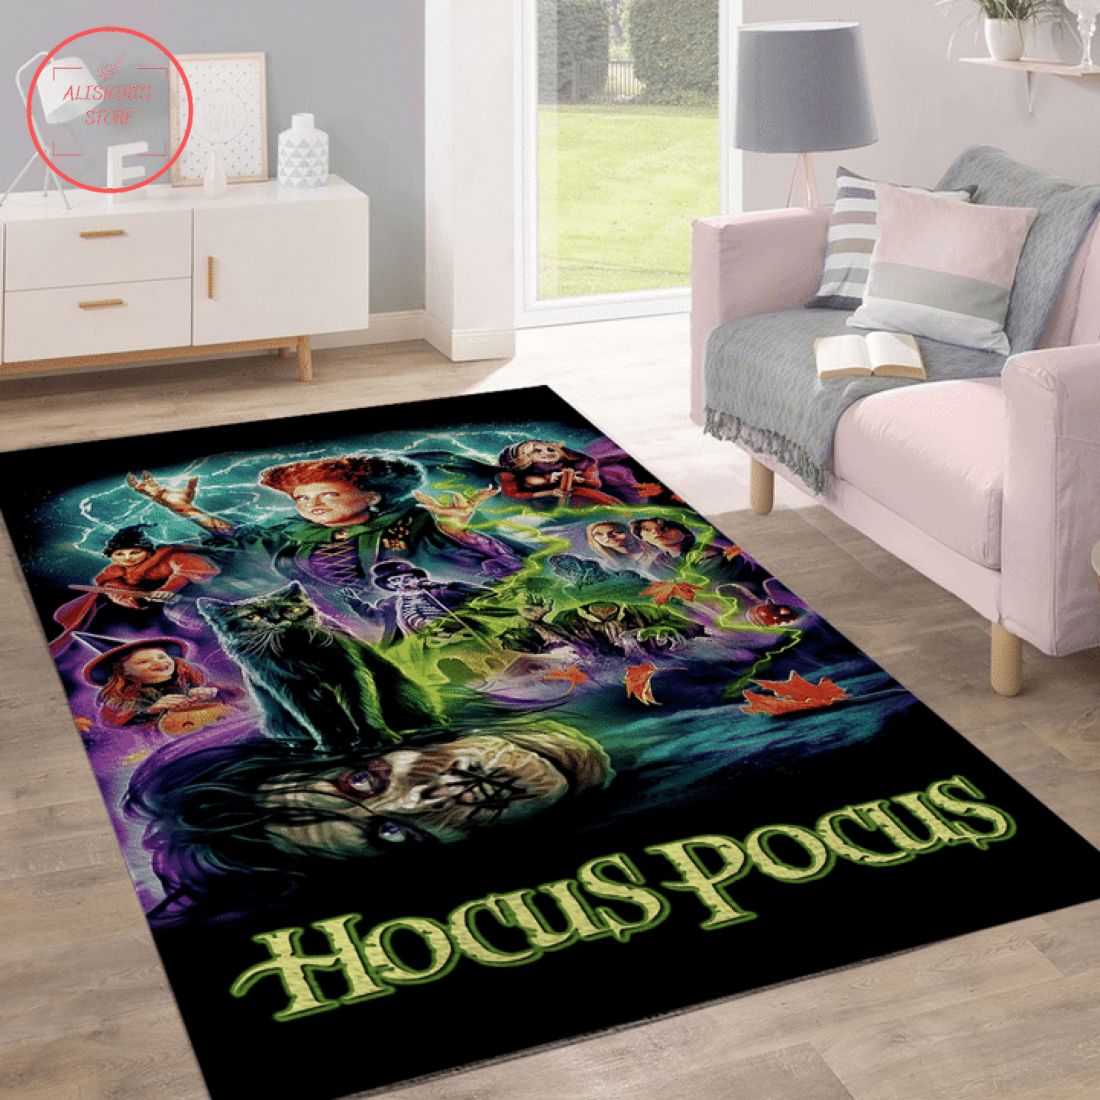 Hocus Pocus Horror Halloween Rug Carpet